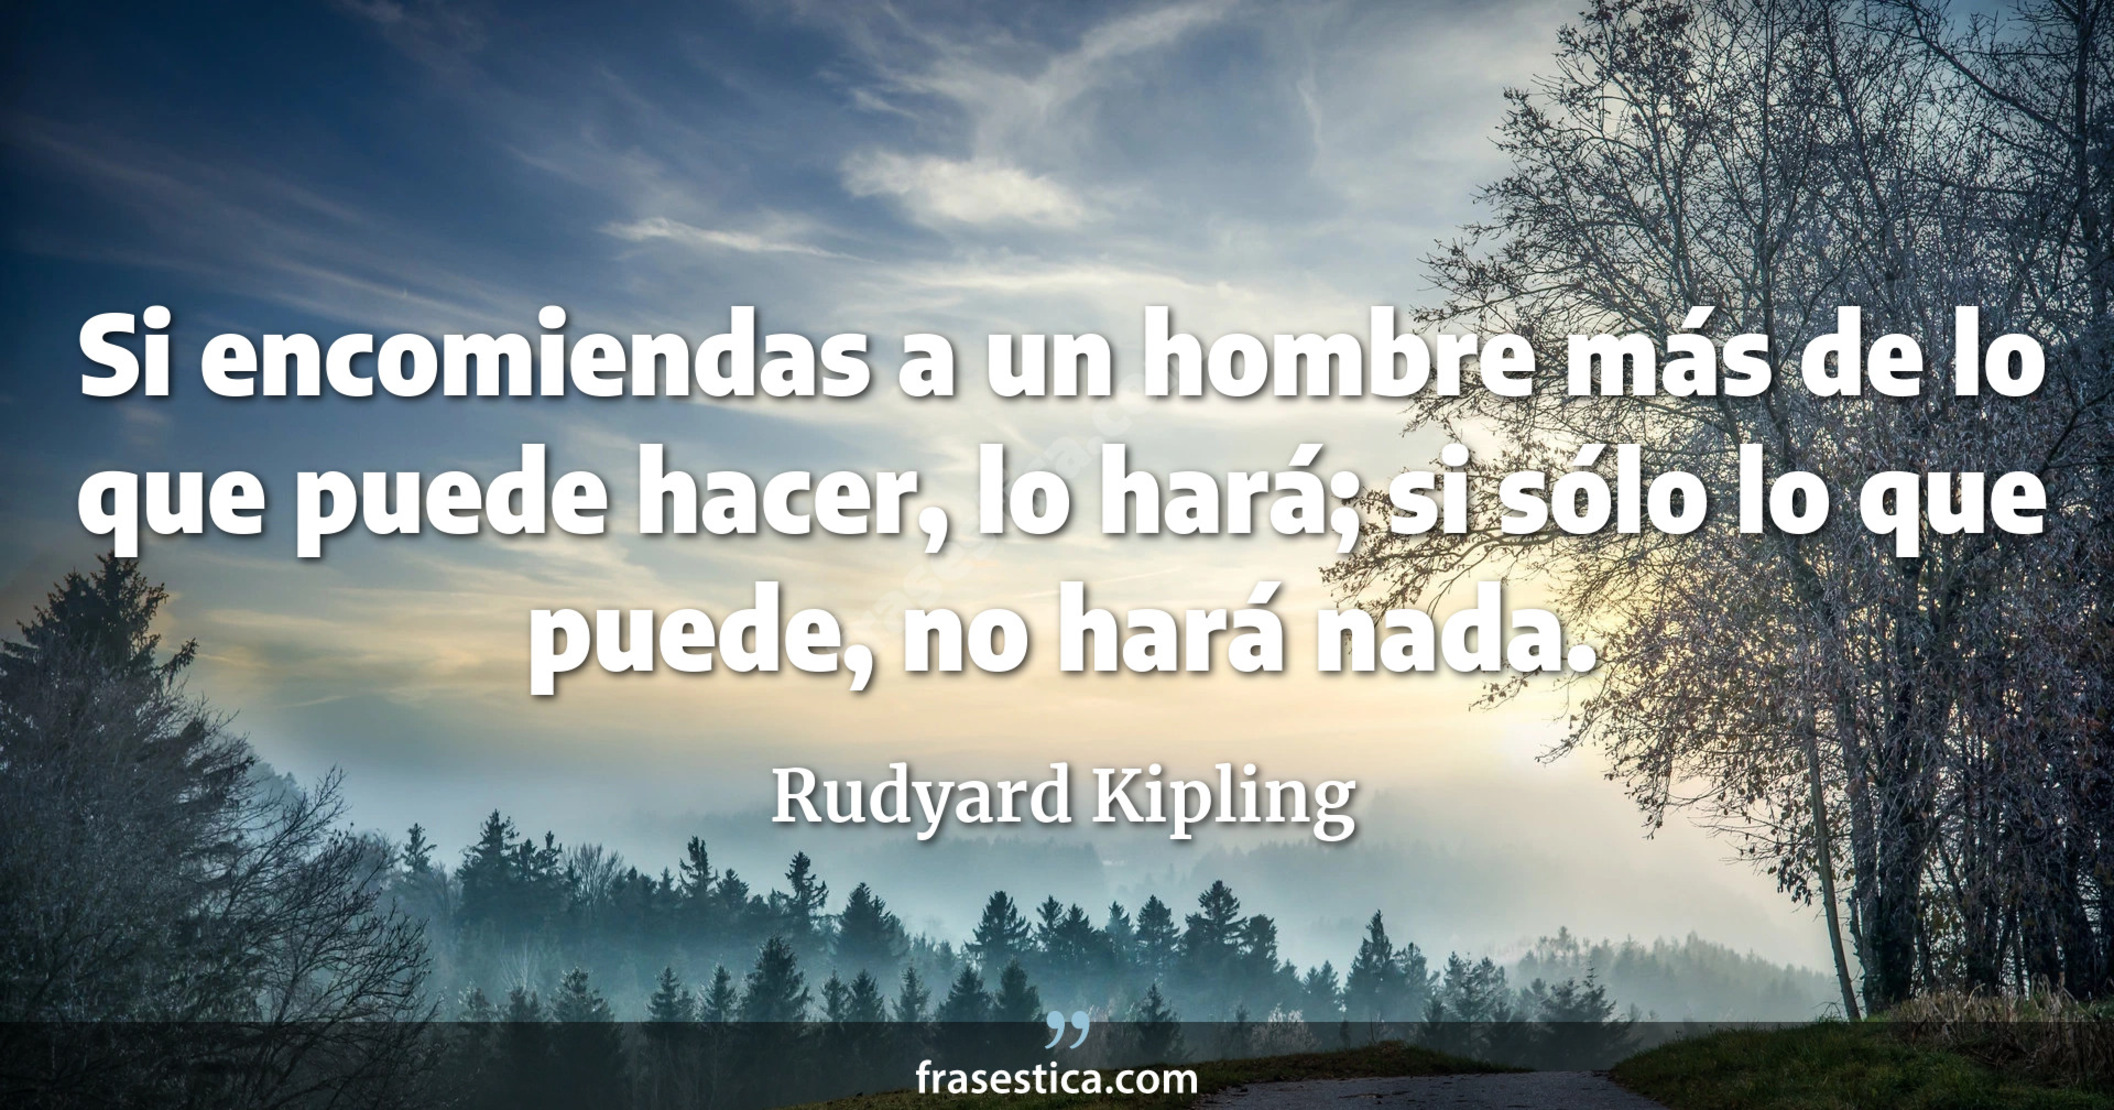 Si encomiendas a un hombre más de lo que puede hacer, lo hará; si sólo lo que puede, no hará nada. - Rudyard Kipling